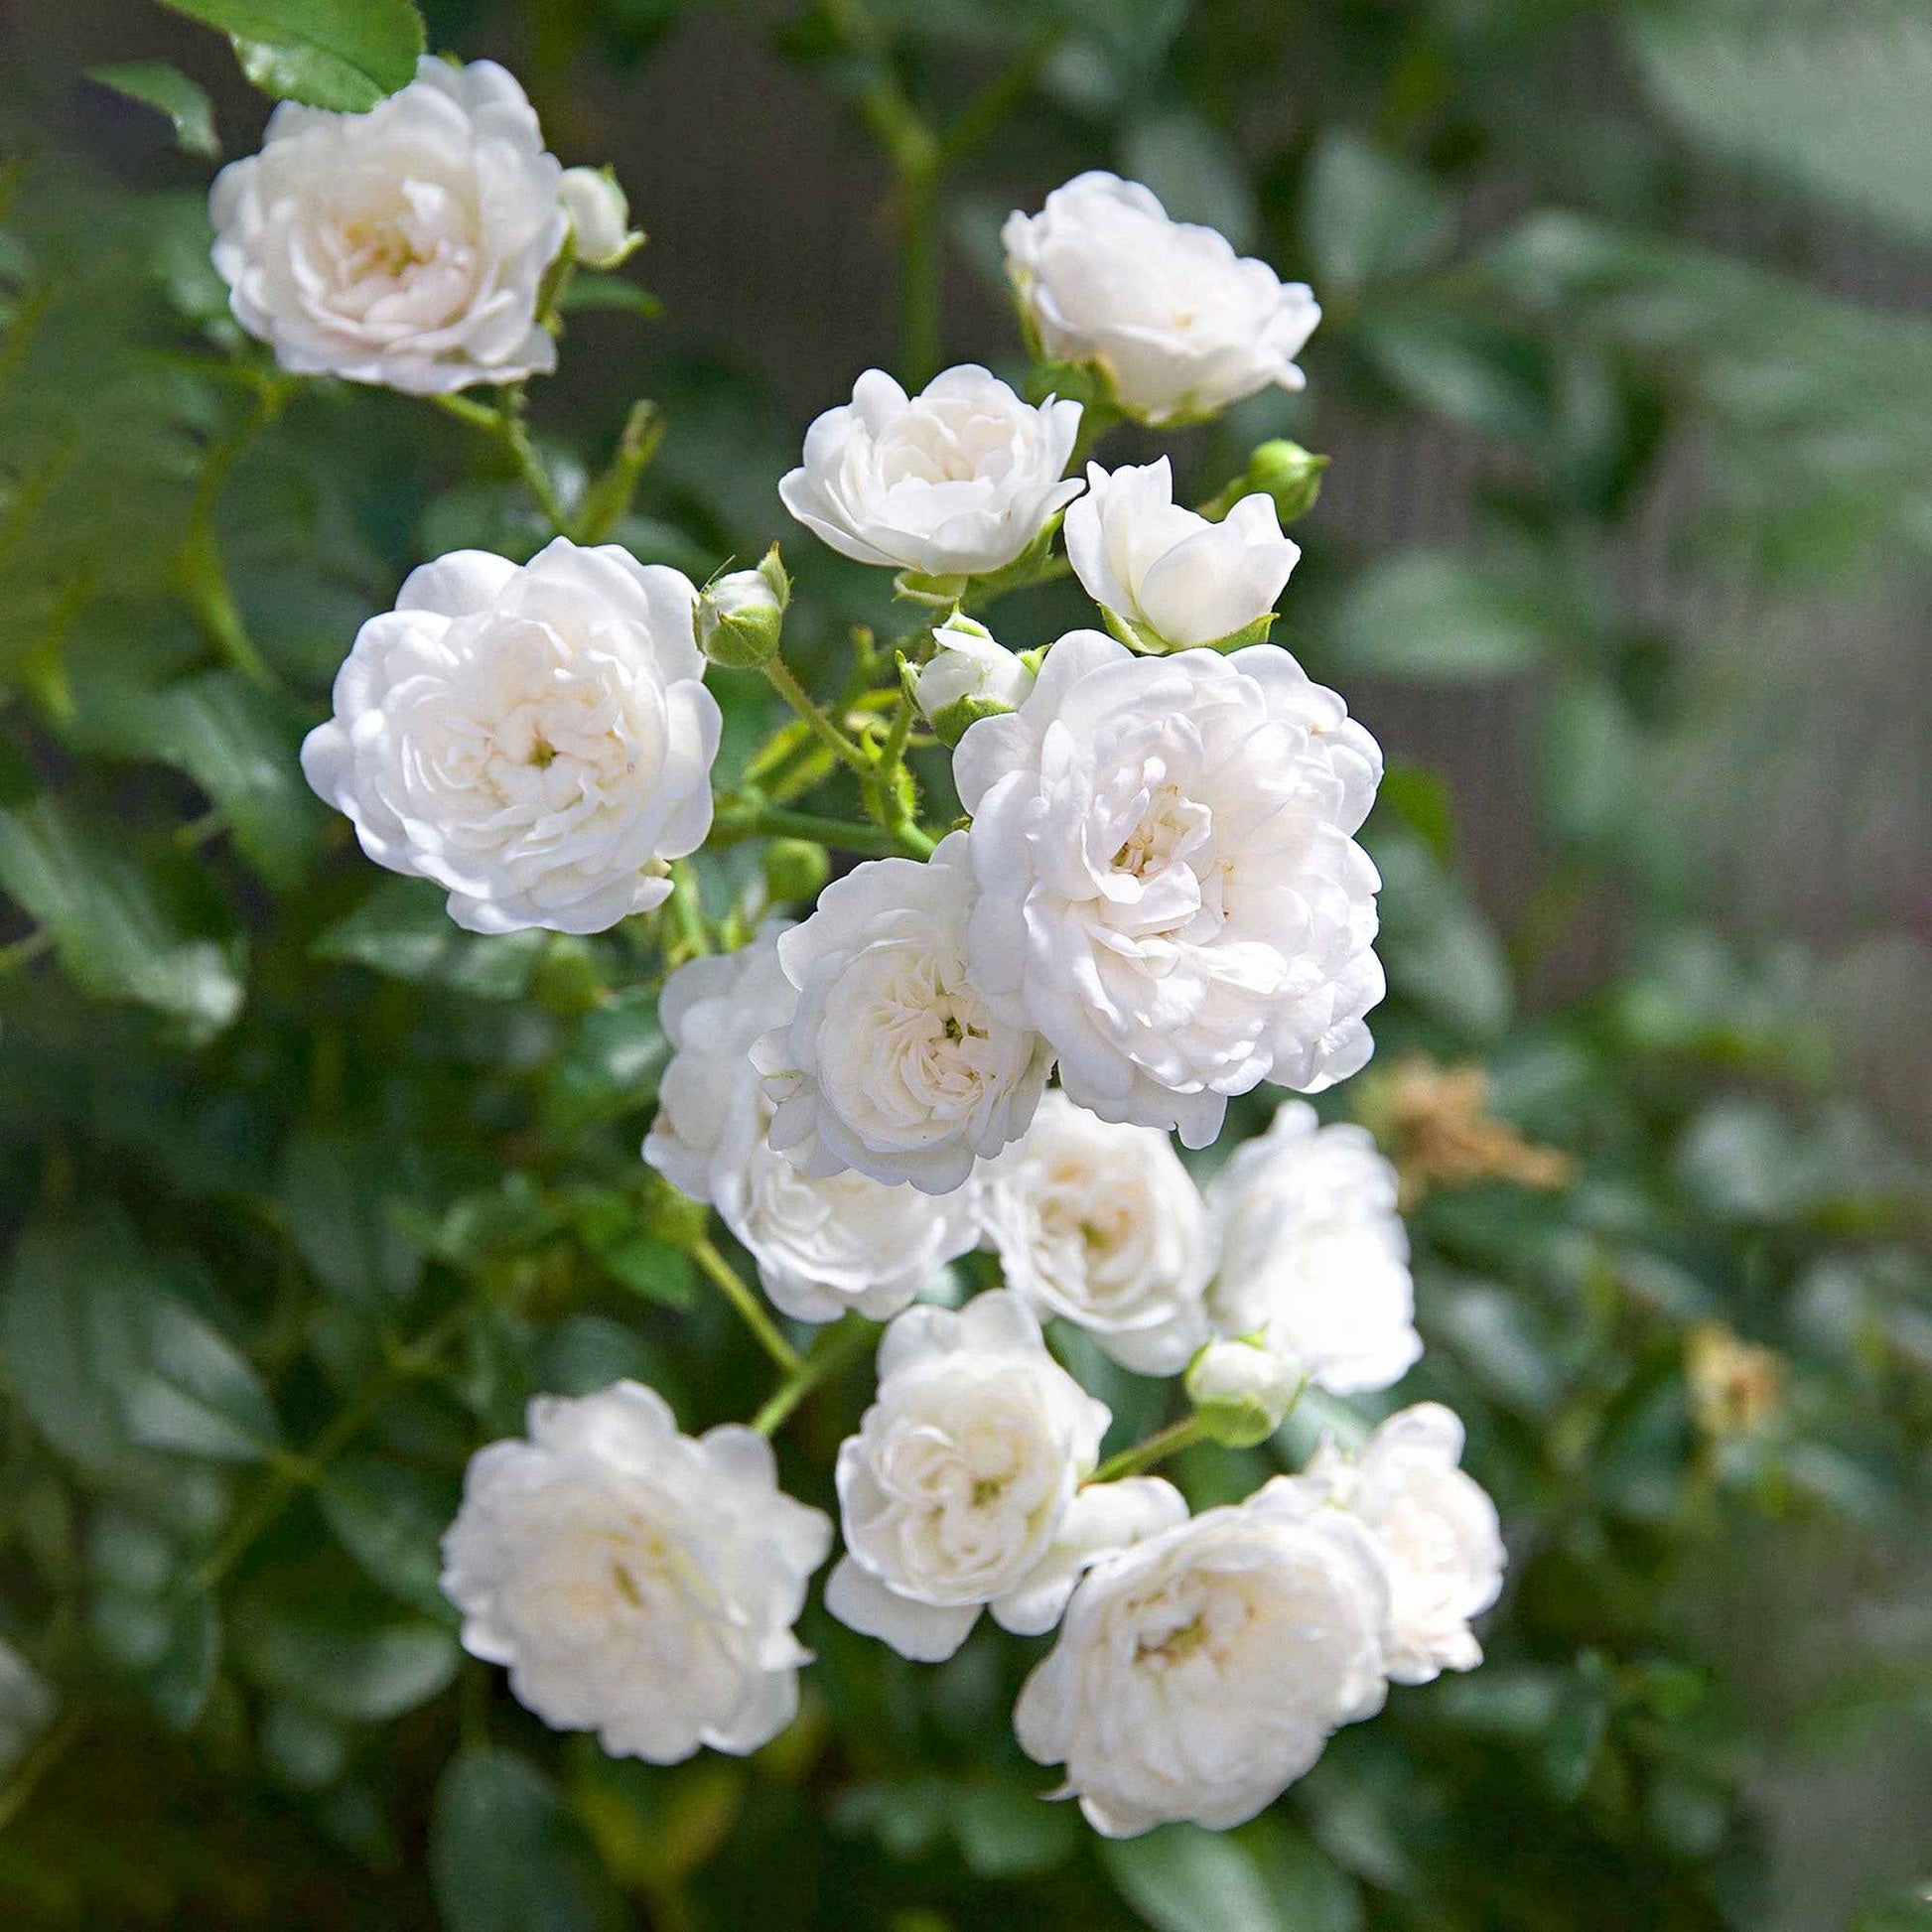 3x Bodembedekkende roos  Rosa 'Crystal Fairy'® Wit  - Bare rooted - Winterhard - Bodembedekkers